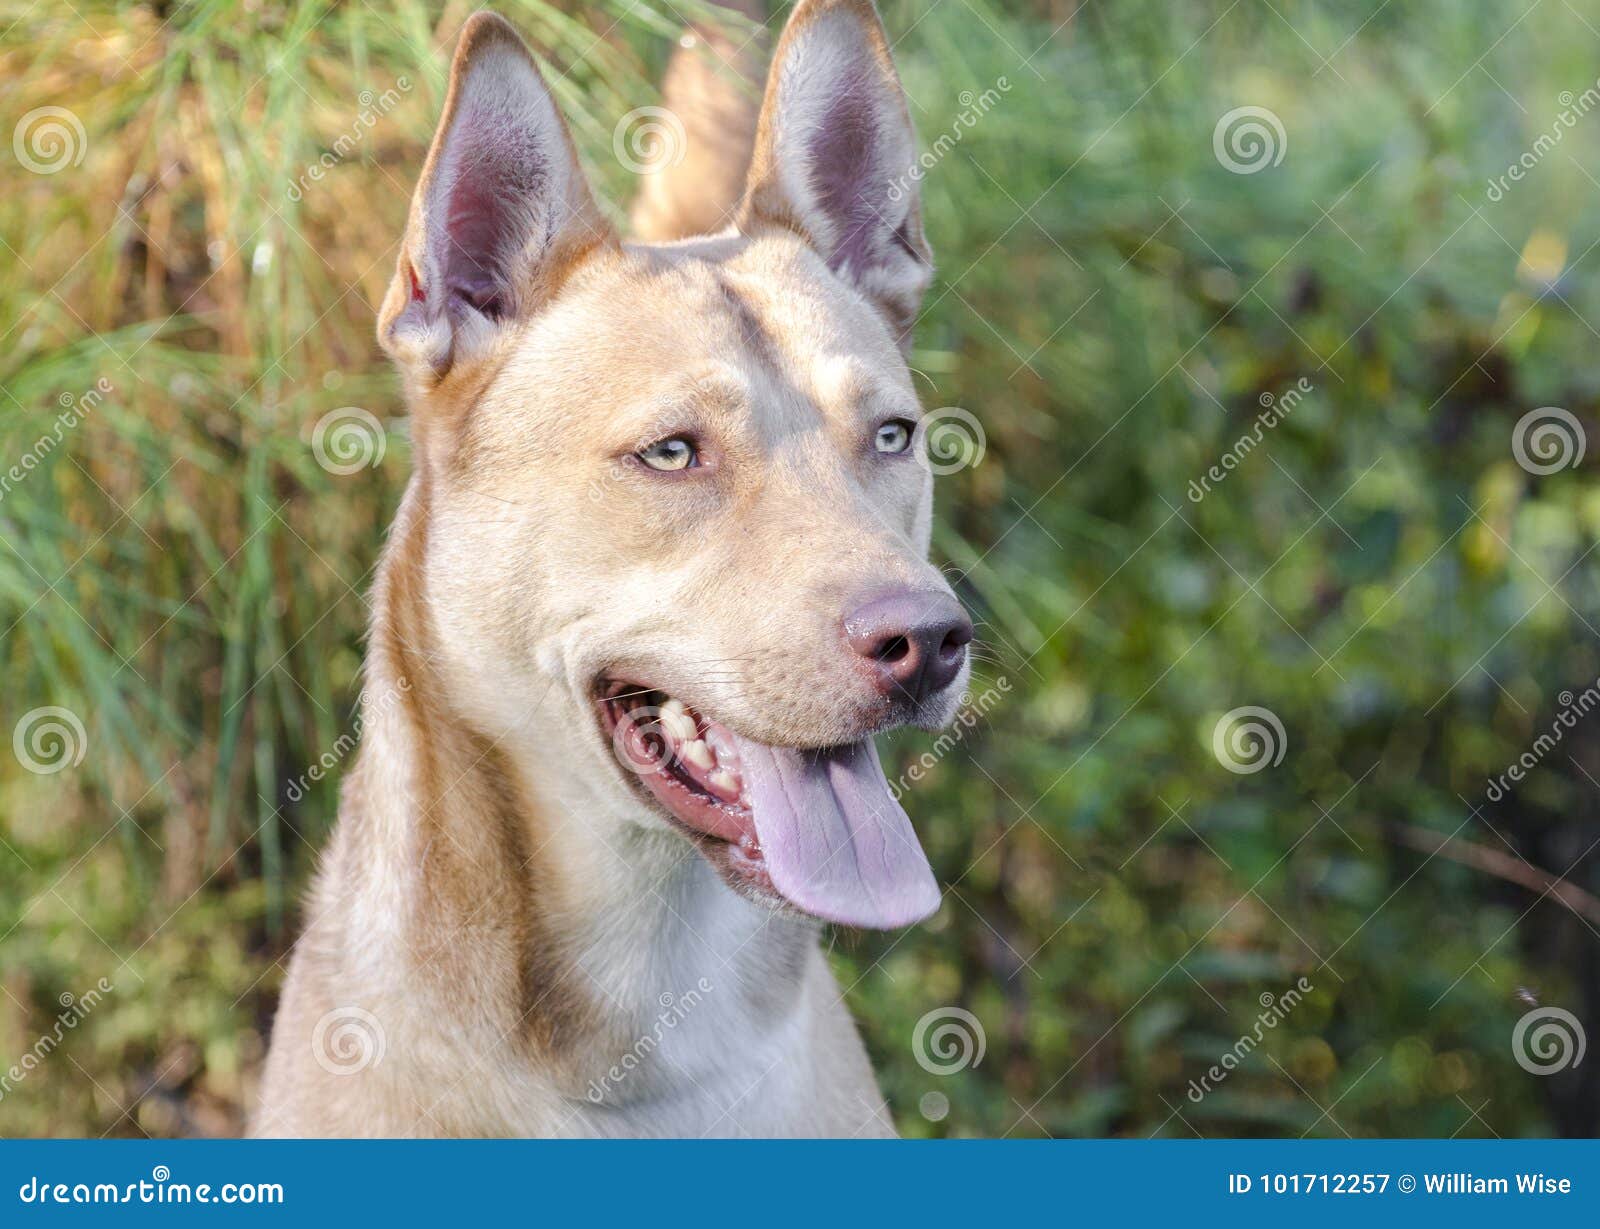 Pharaoh Hound Siberian Husky Mixed Breed Dog Stock Image Image Of Canine Animal 101712257